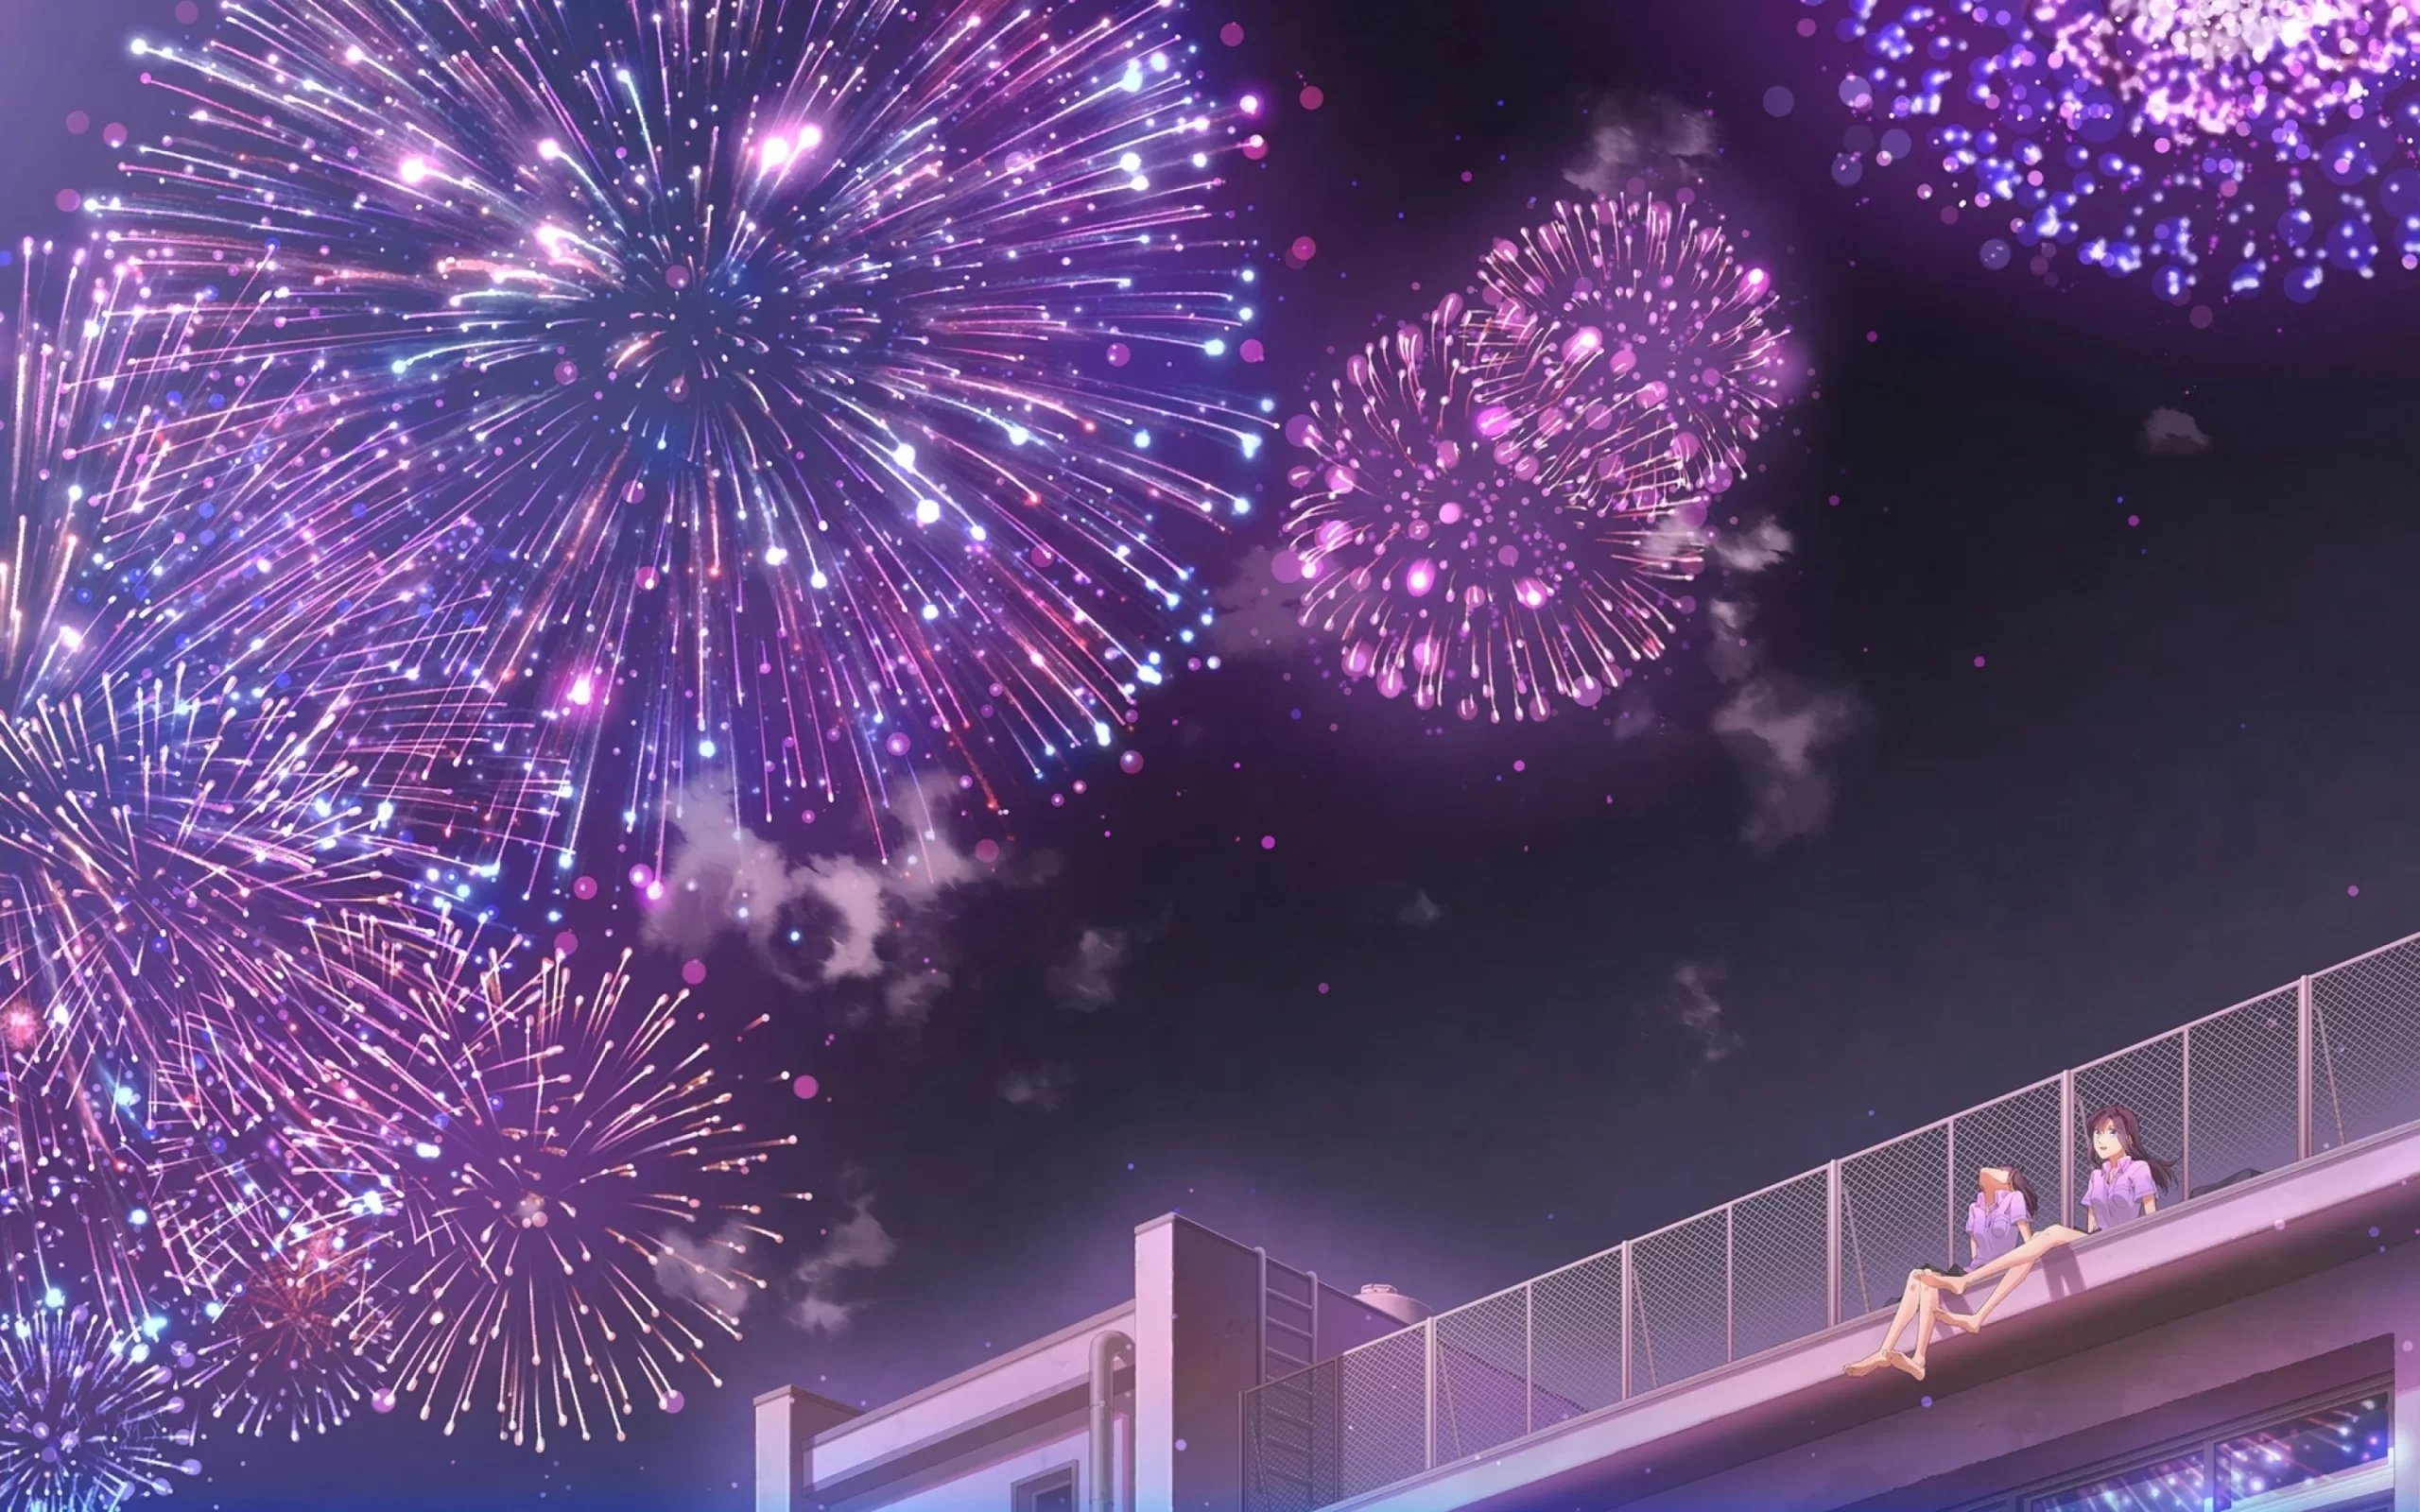 Chúc mừng năm mới! Hãy tận hưởng mừng Tết đầy cảm hứng với những hình nền Anime Mừng năm mới tuyệt vời này. Từ những bức hình tươi sáng đến những bức hình lạnh lẽo, bạn có thể tìm thấy chính xác hình ảnh mà mình yêu thích để thể hiện phong cách mạnh mẽ và sáng tạo trong dịp Tết này.